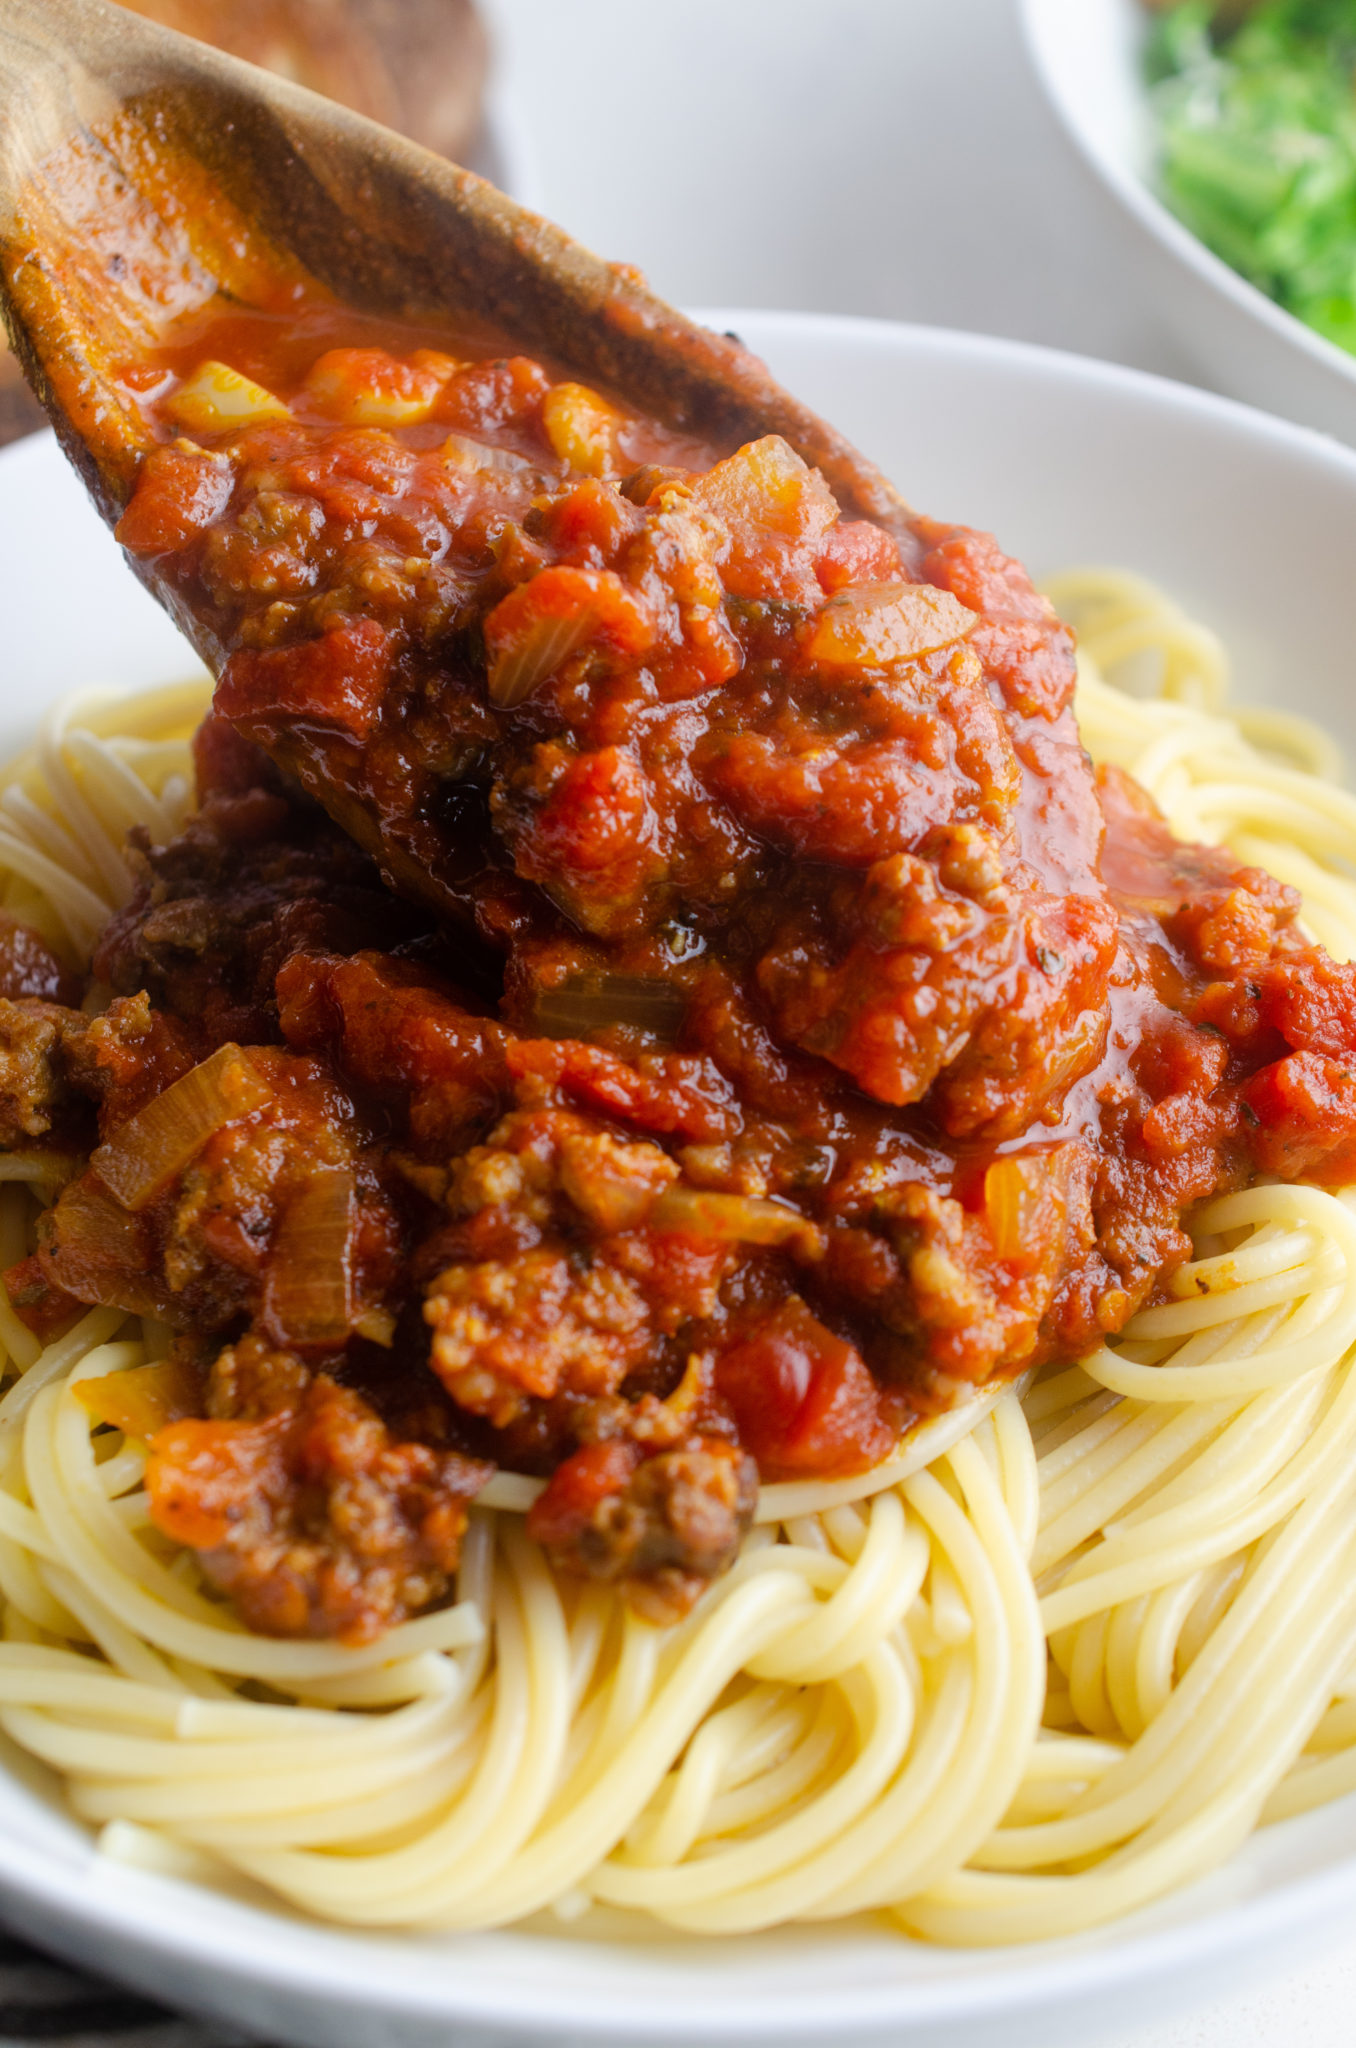 Spaghetti and Meat Sauce Recipe Life #39 s Ambrosia